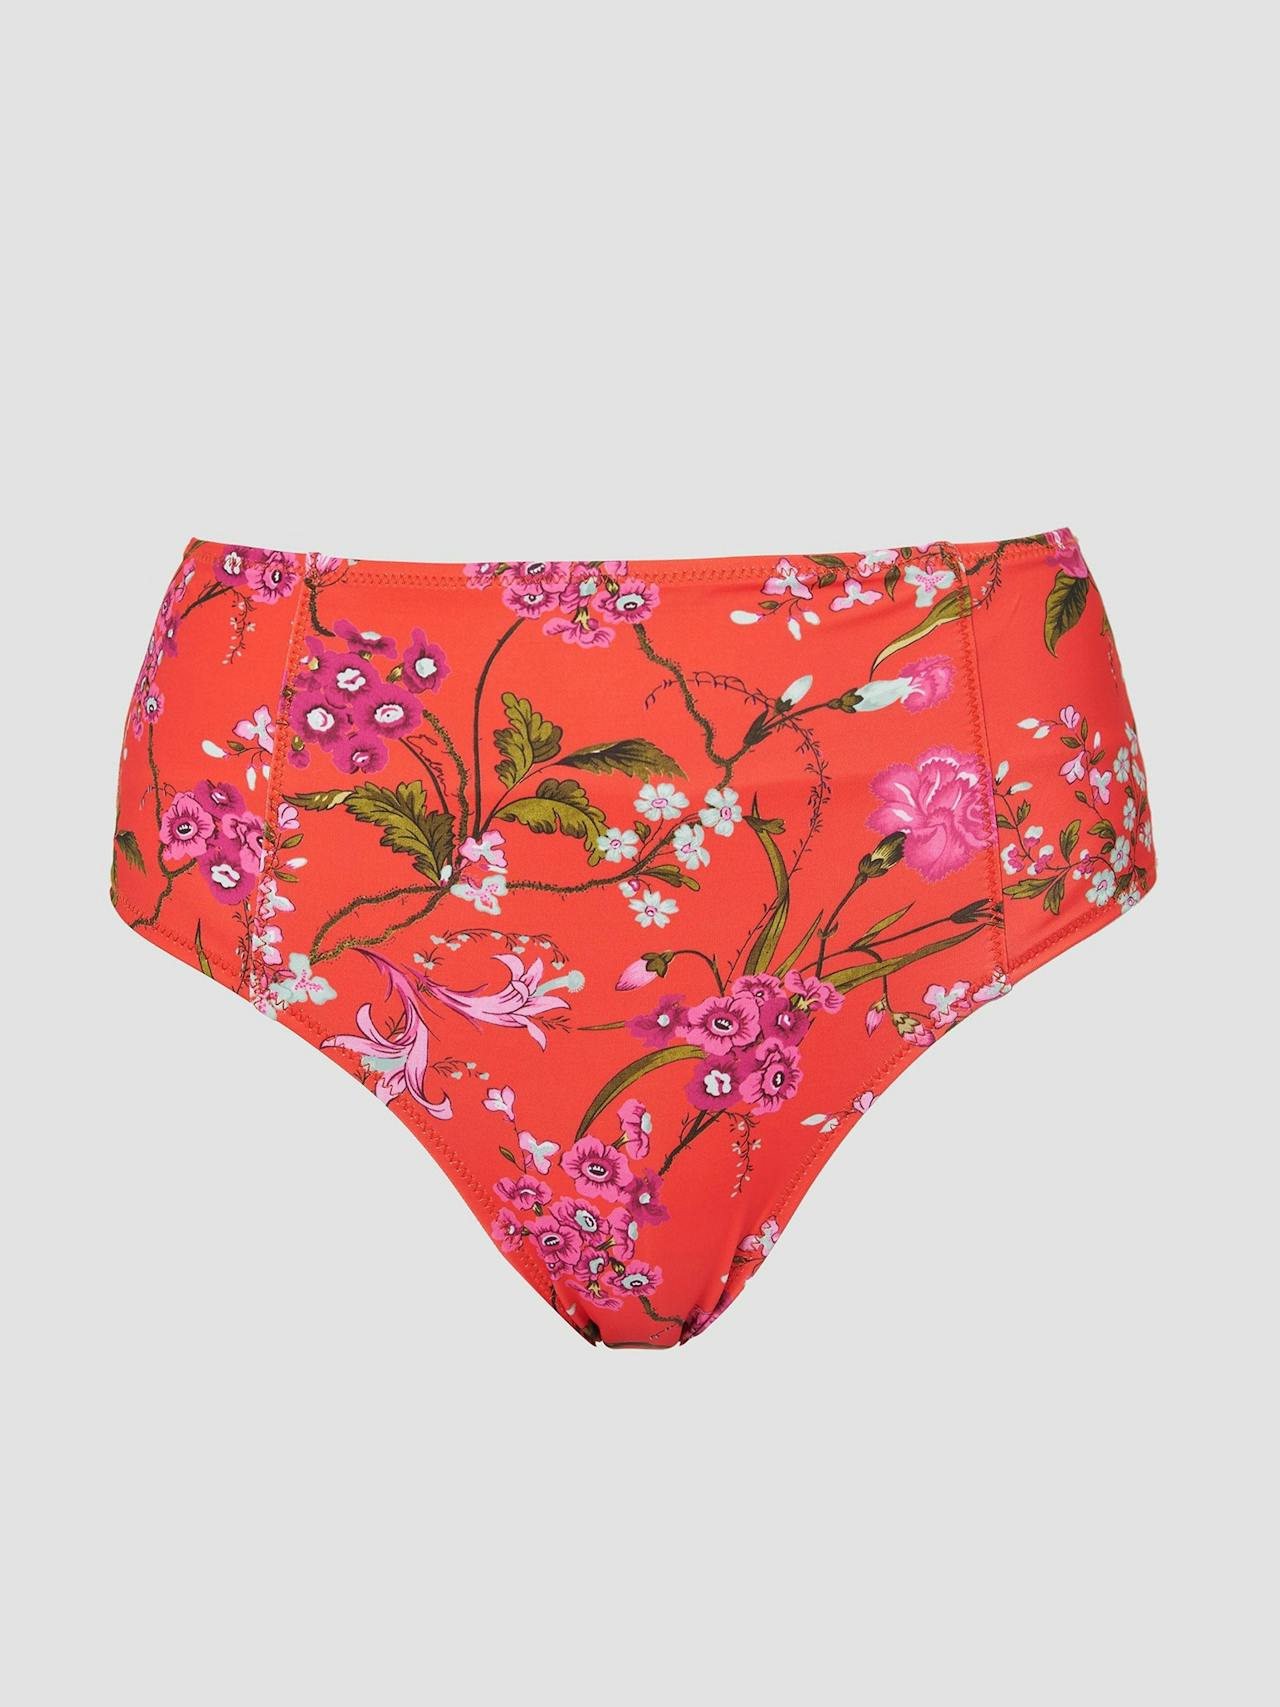 Poppy red bikini bottom